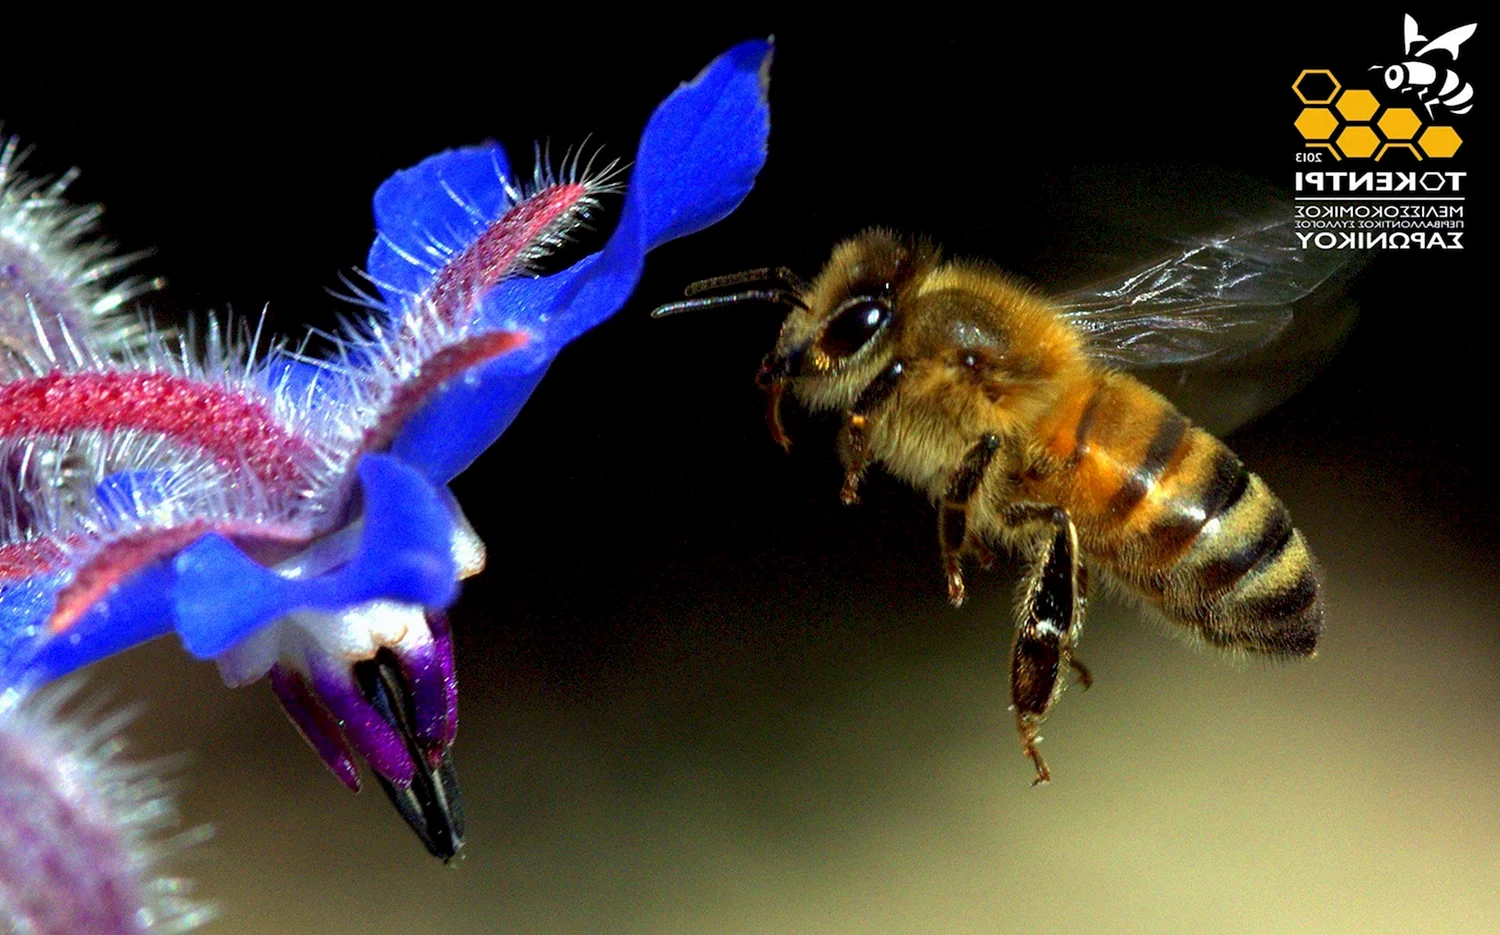 Пчела в полете